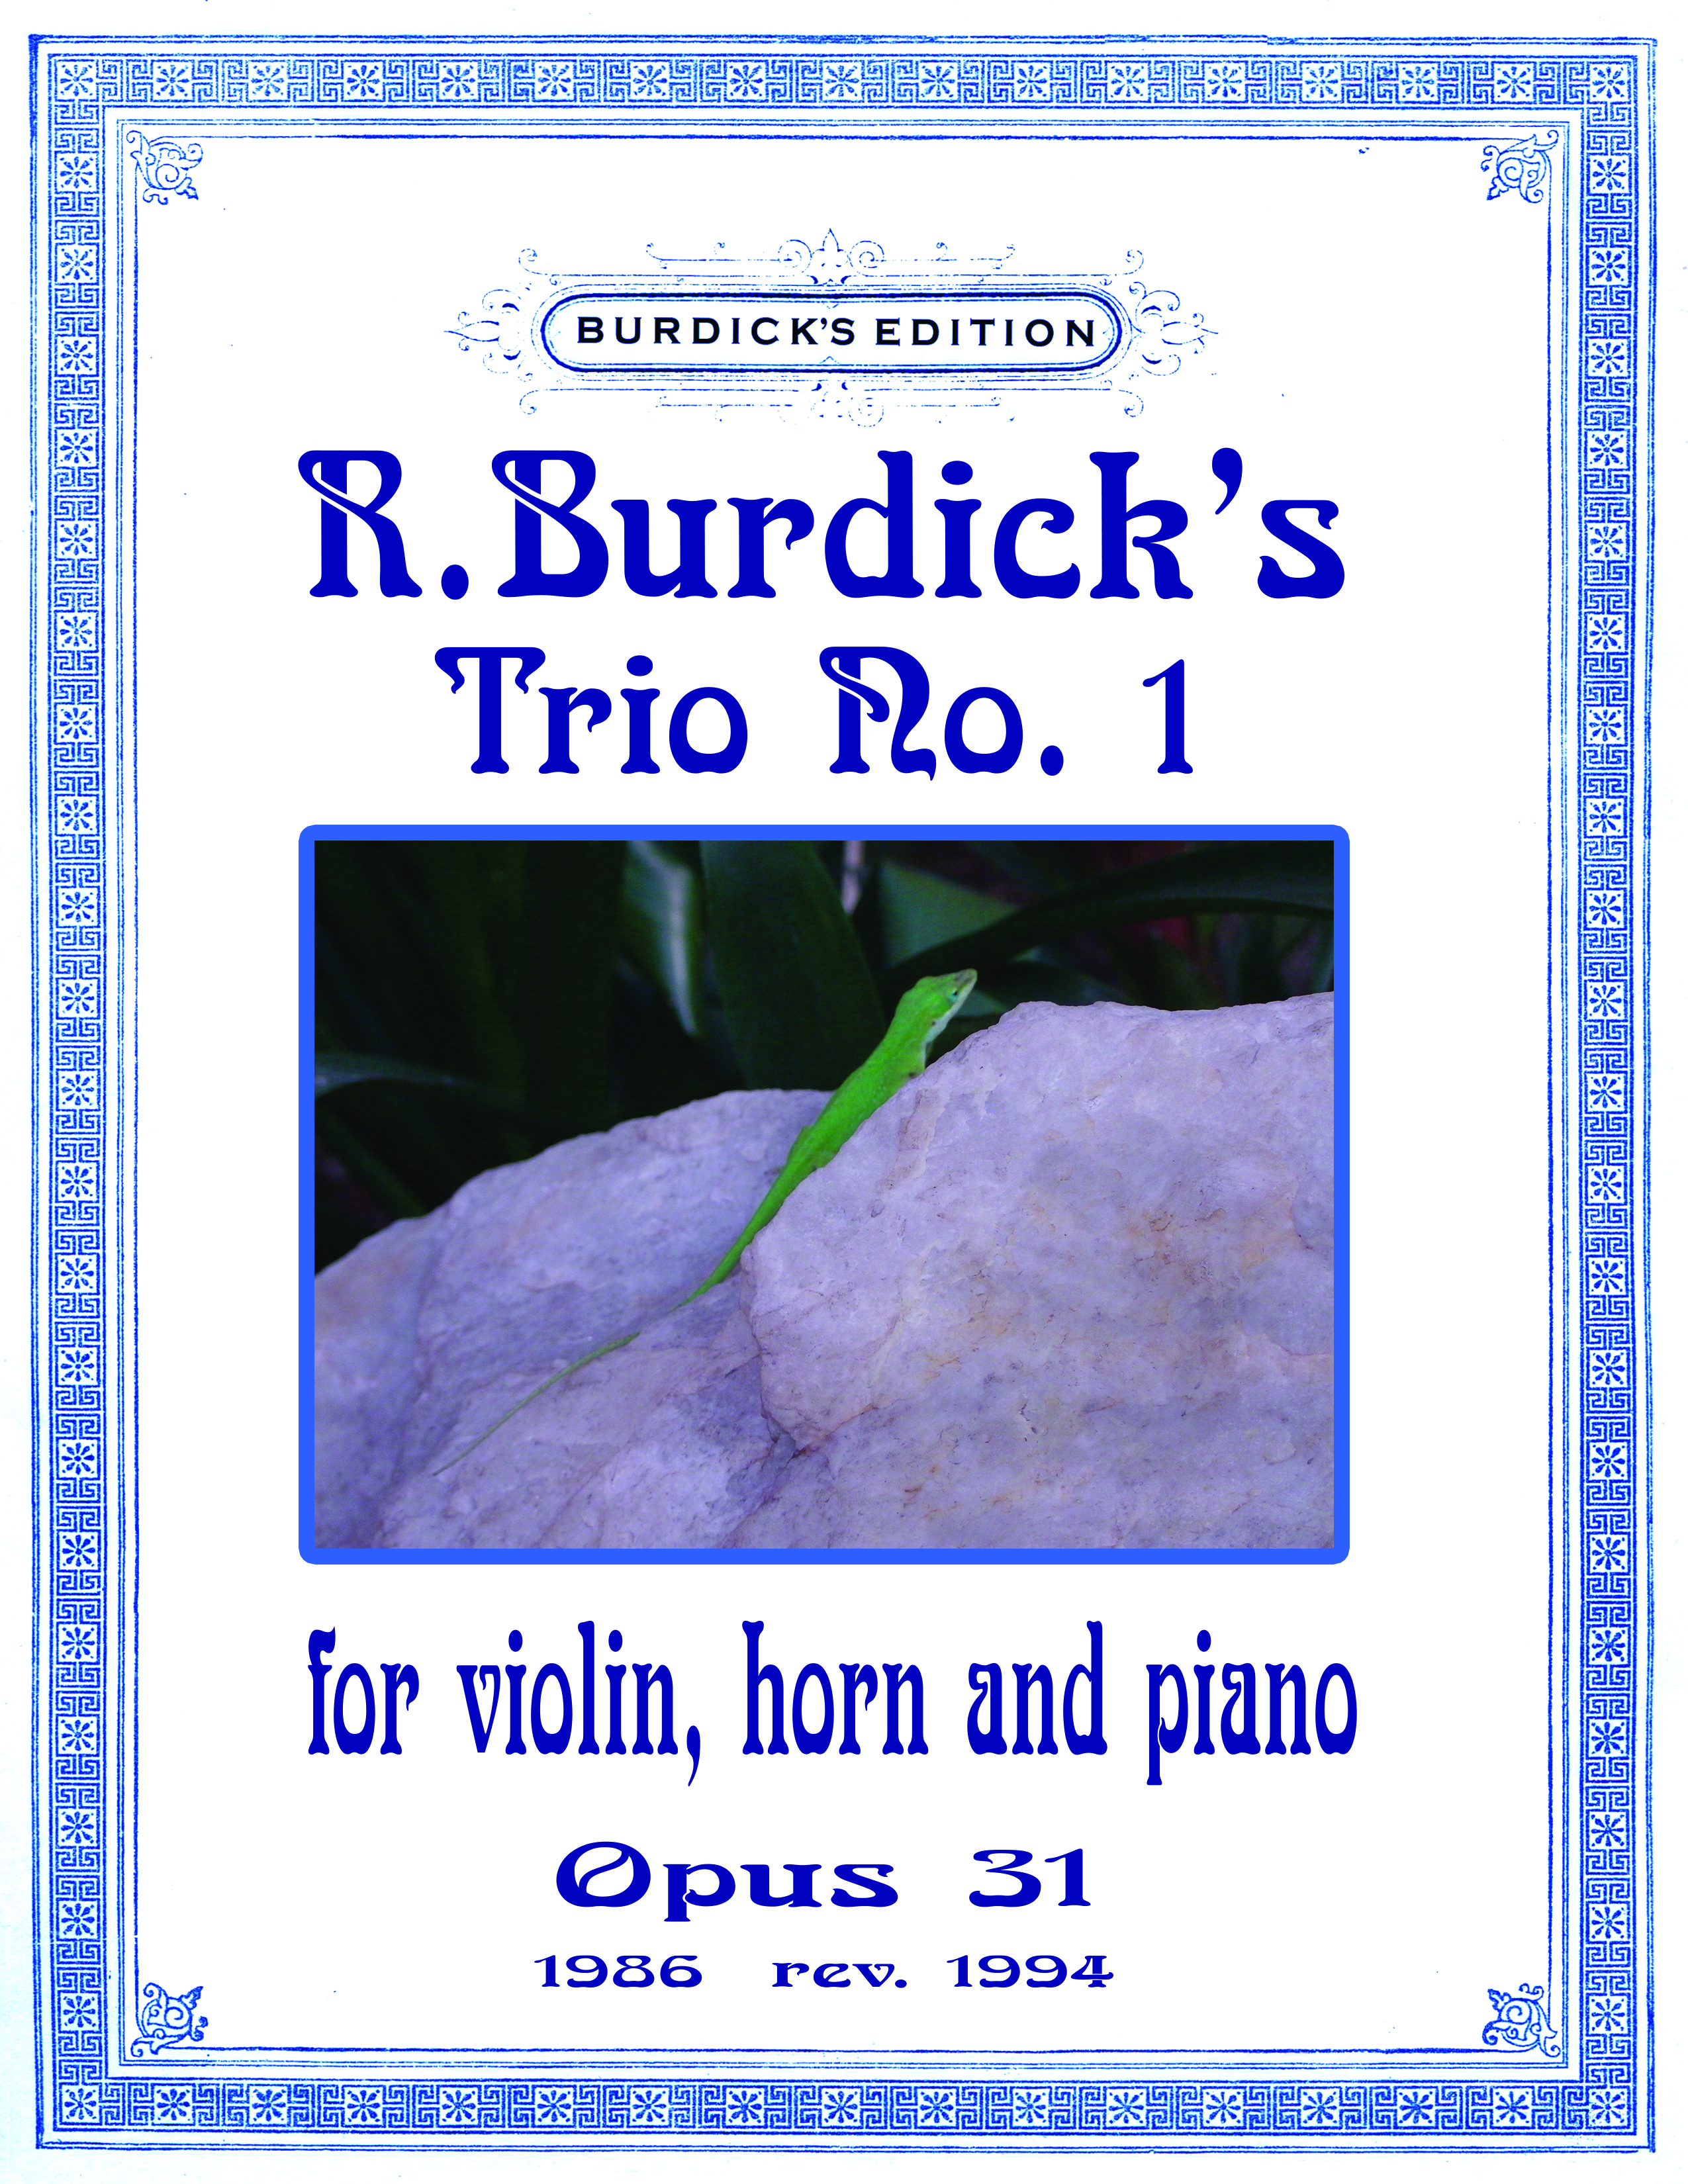 Cover for Burdick's Opus 31 -Trio No. 1